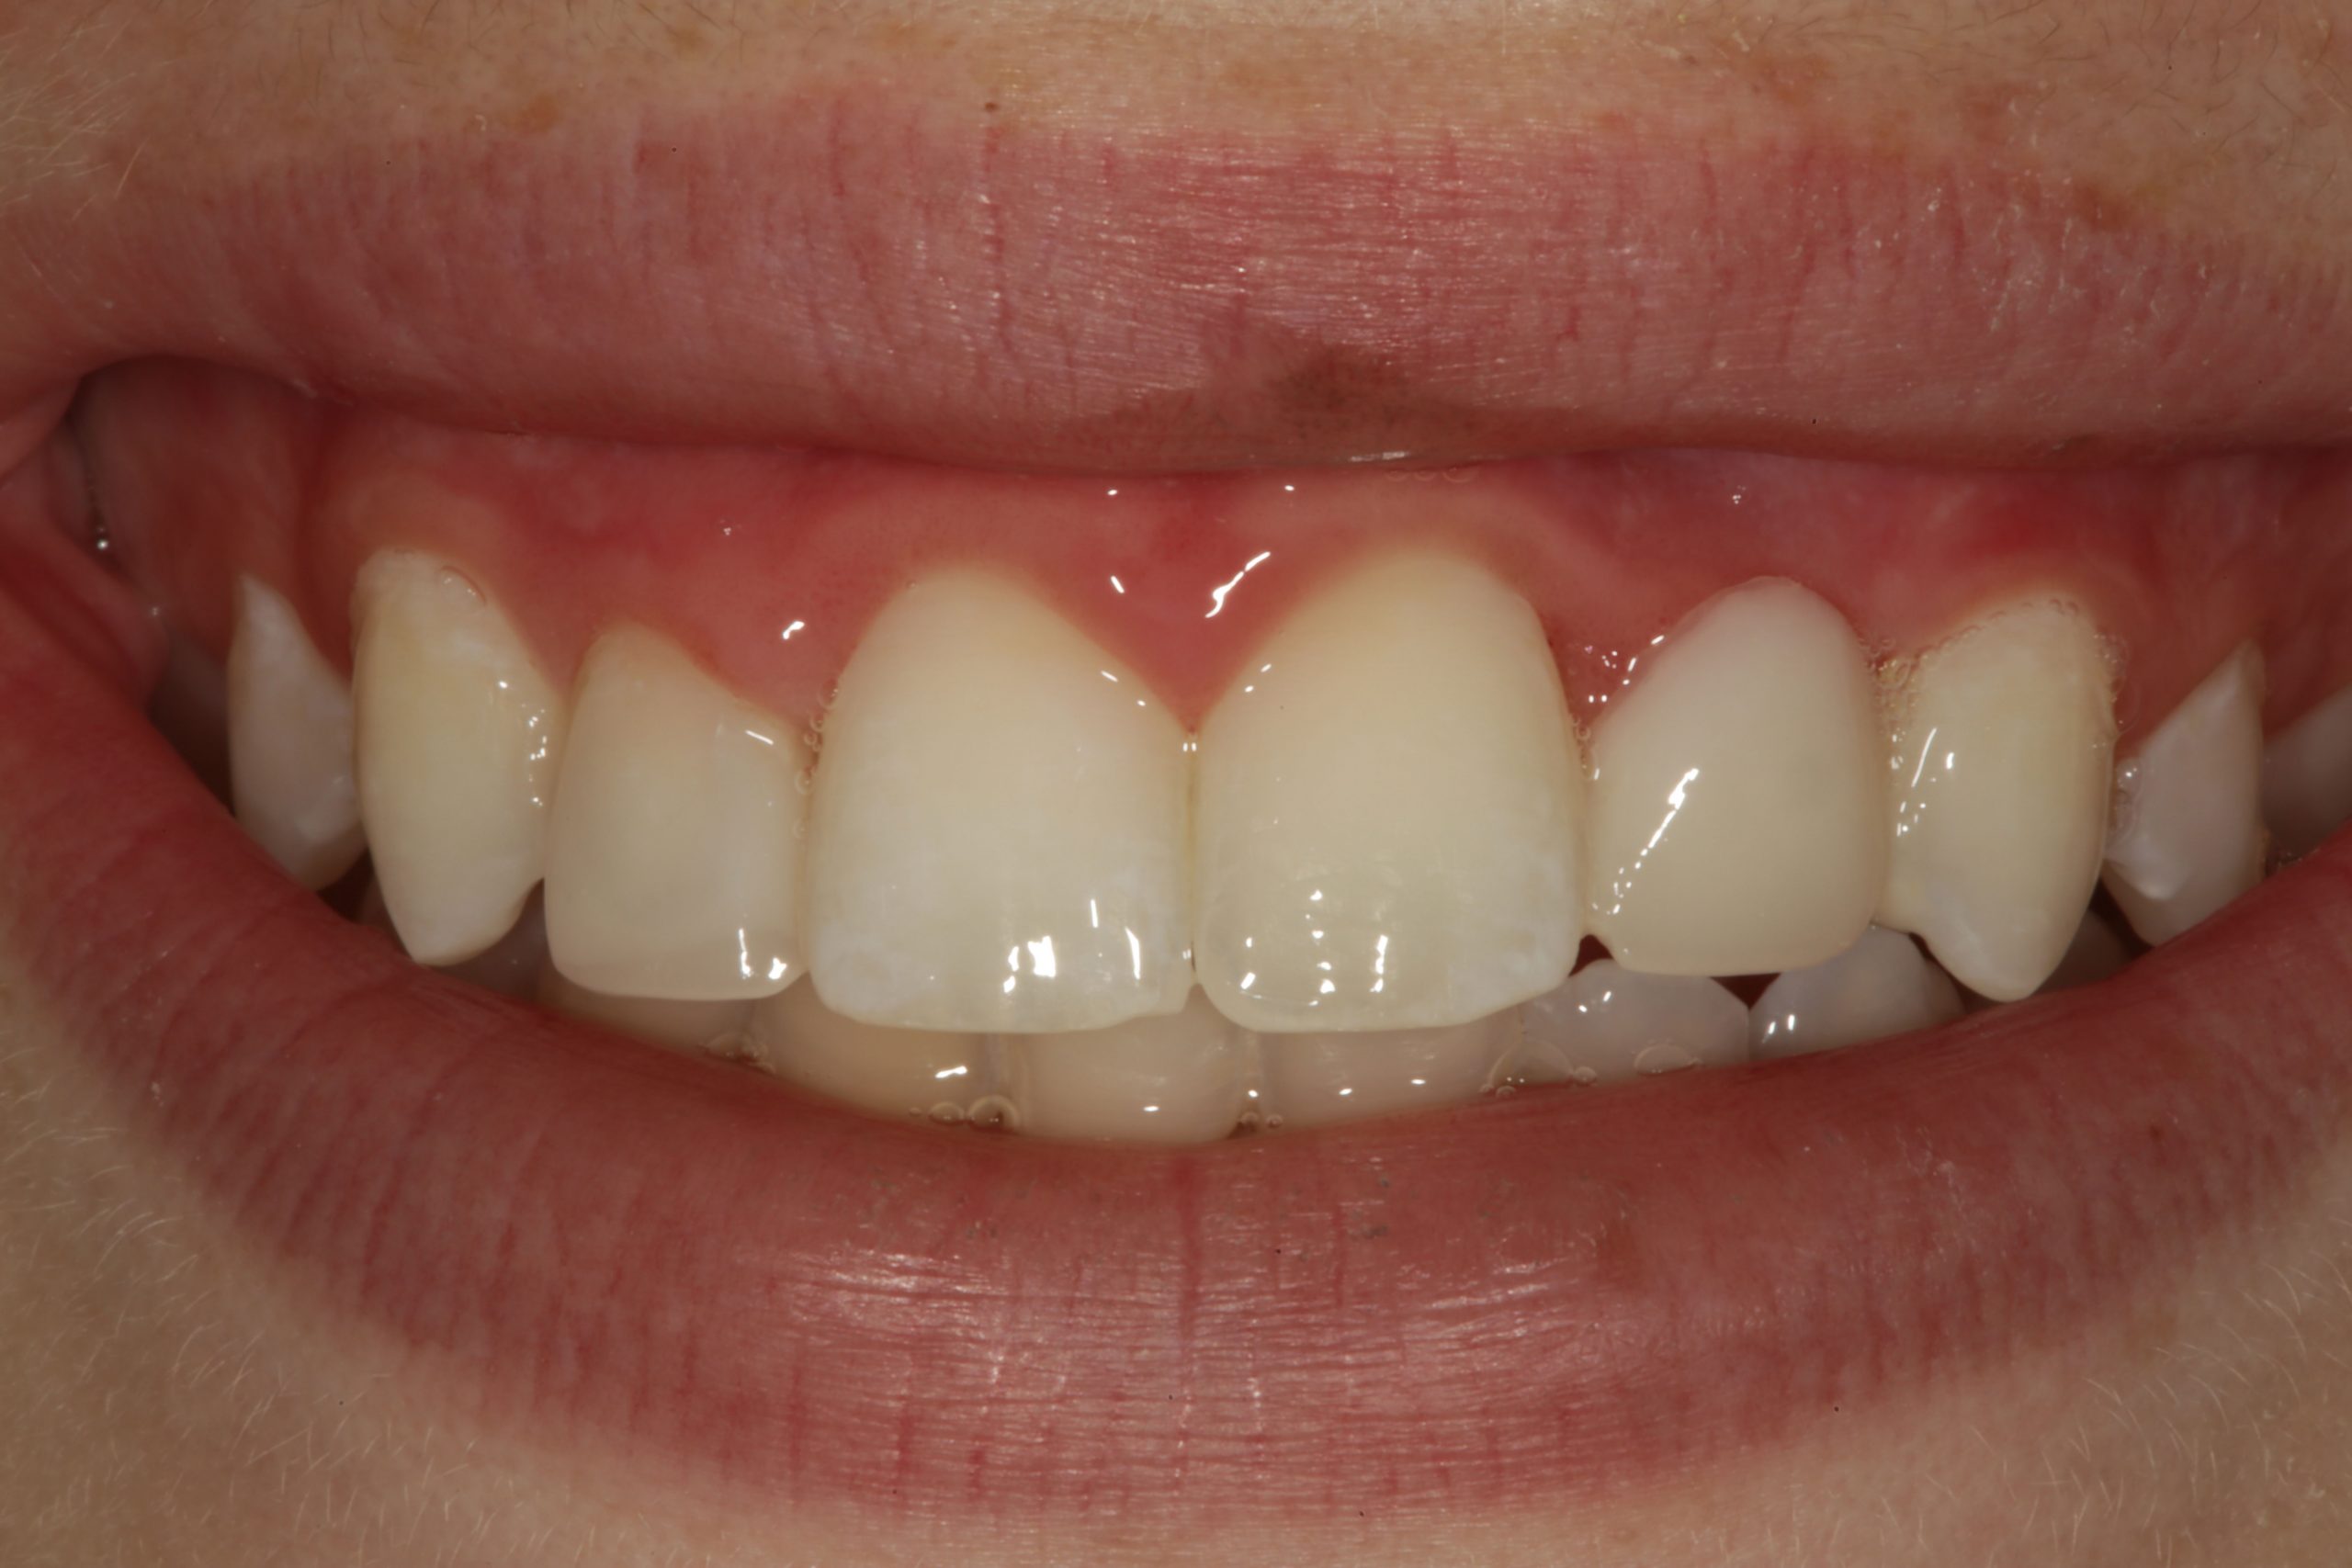 Uveneer: Simplifying Artistic Direct Composite Veneering - Dentistry Today